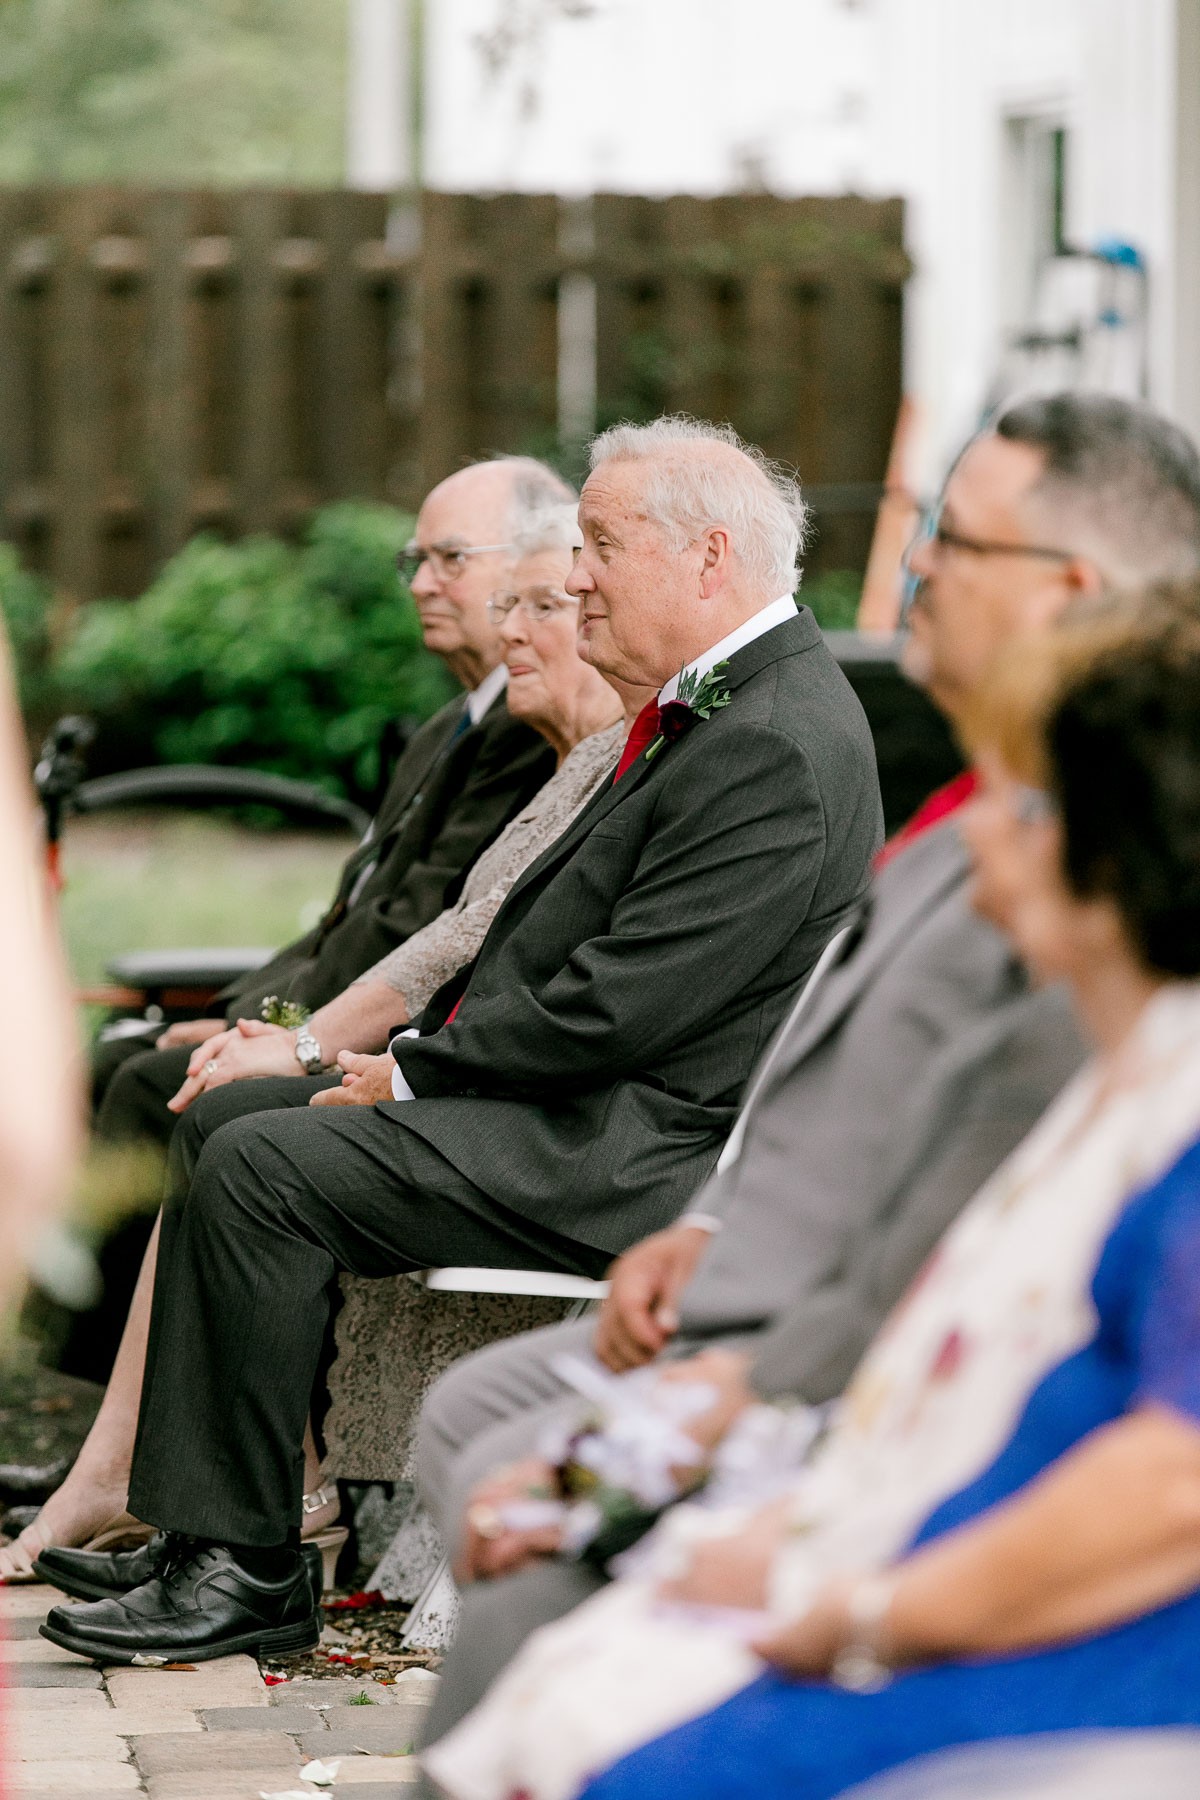 Grandparents watch wedding 